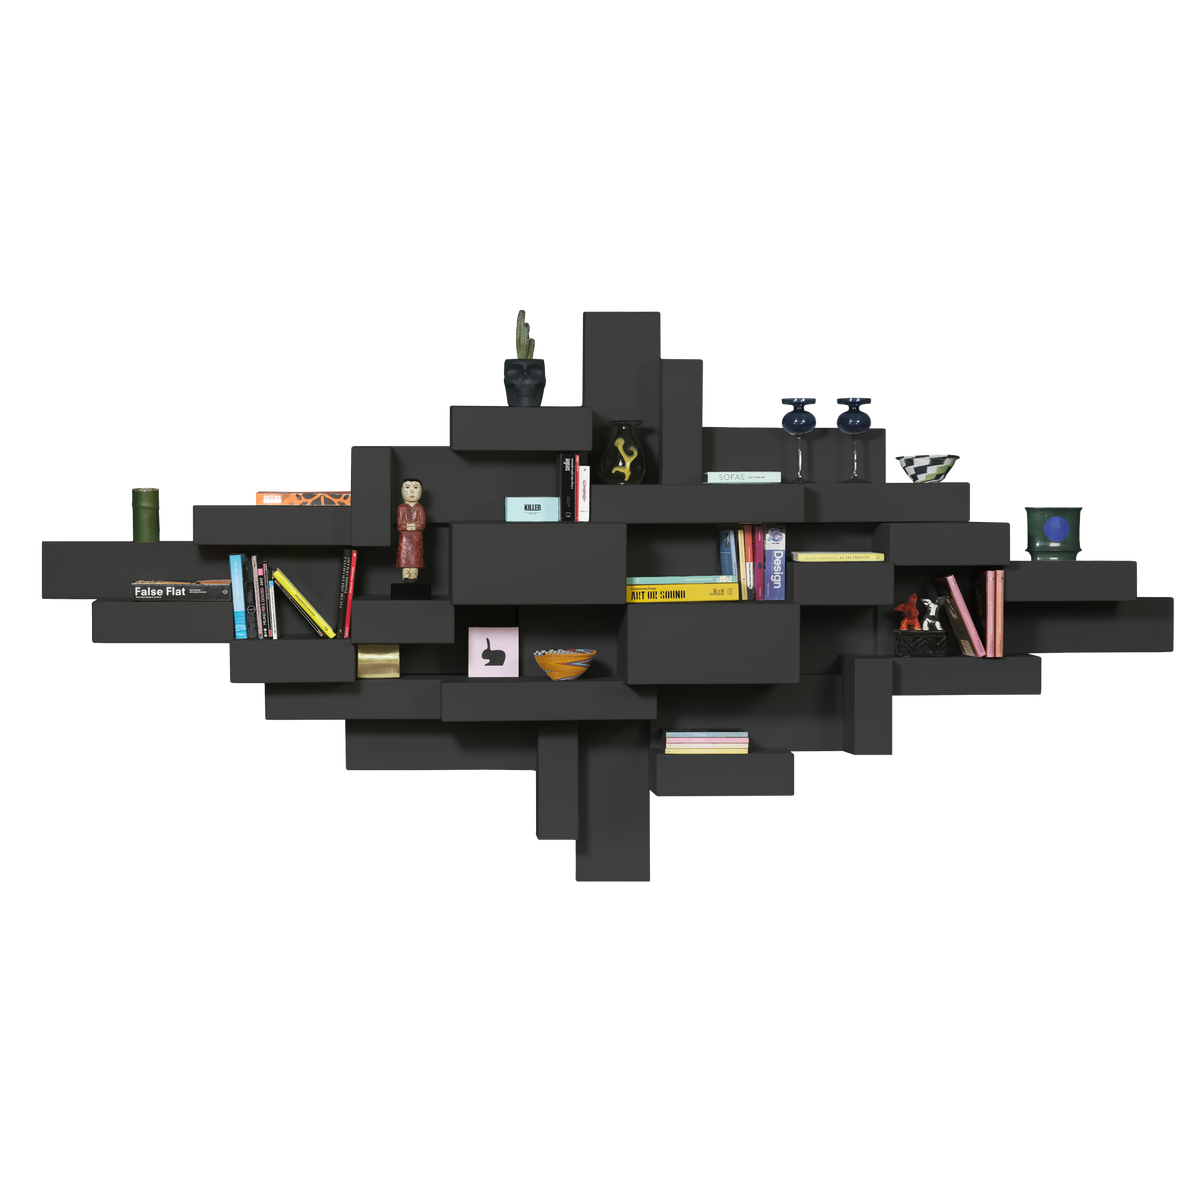 PRIMITIVE bookshelf black, QeeBoo, Eye on Design